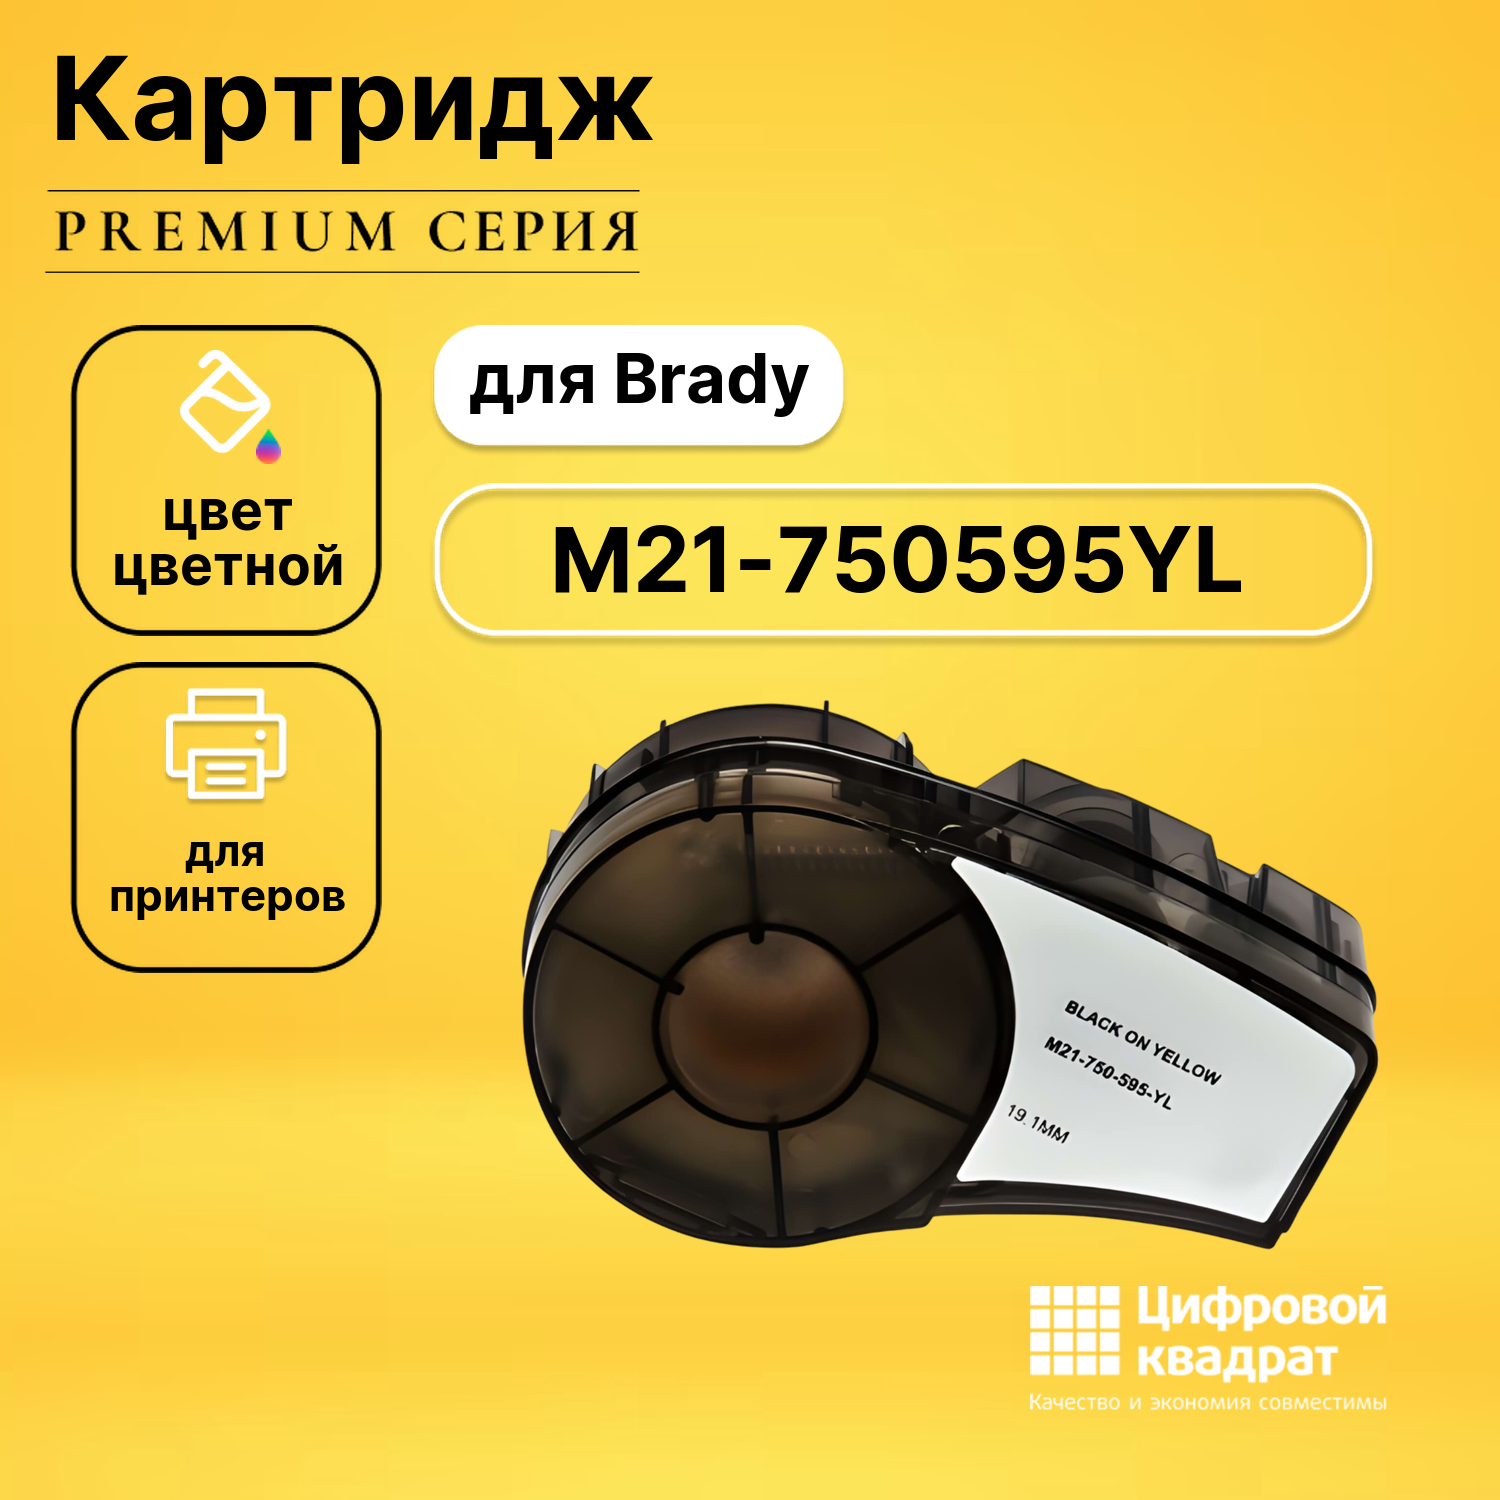 Картридж DS с термотрансферной лентой M21-750595YL Brady черный на желтом